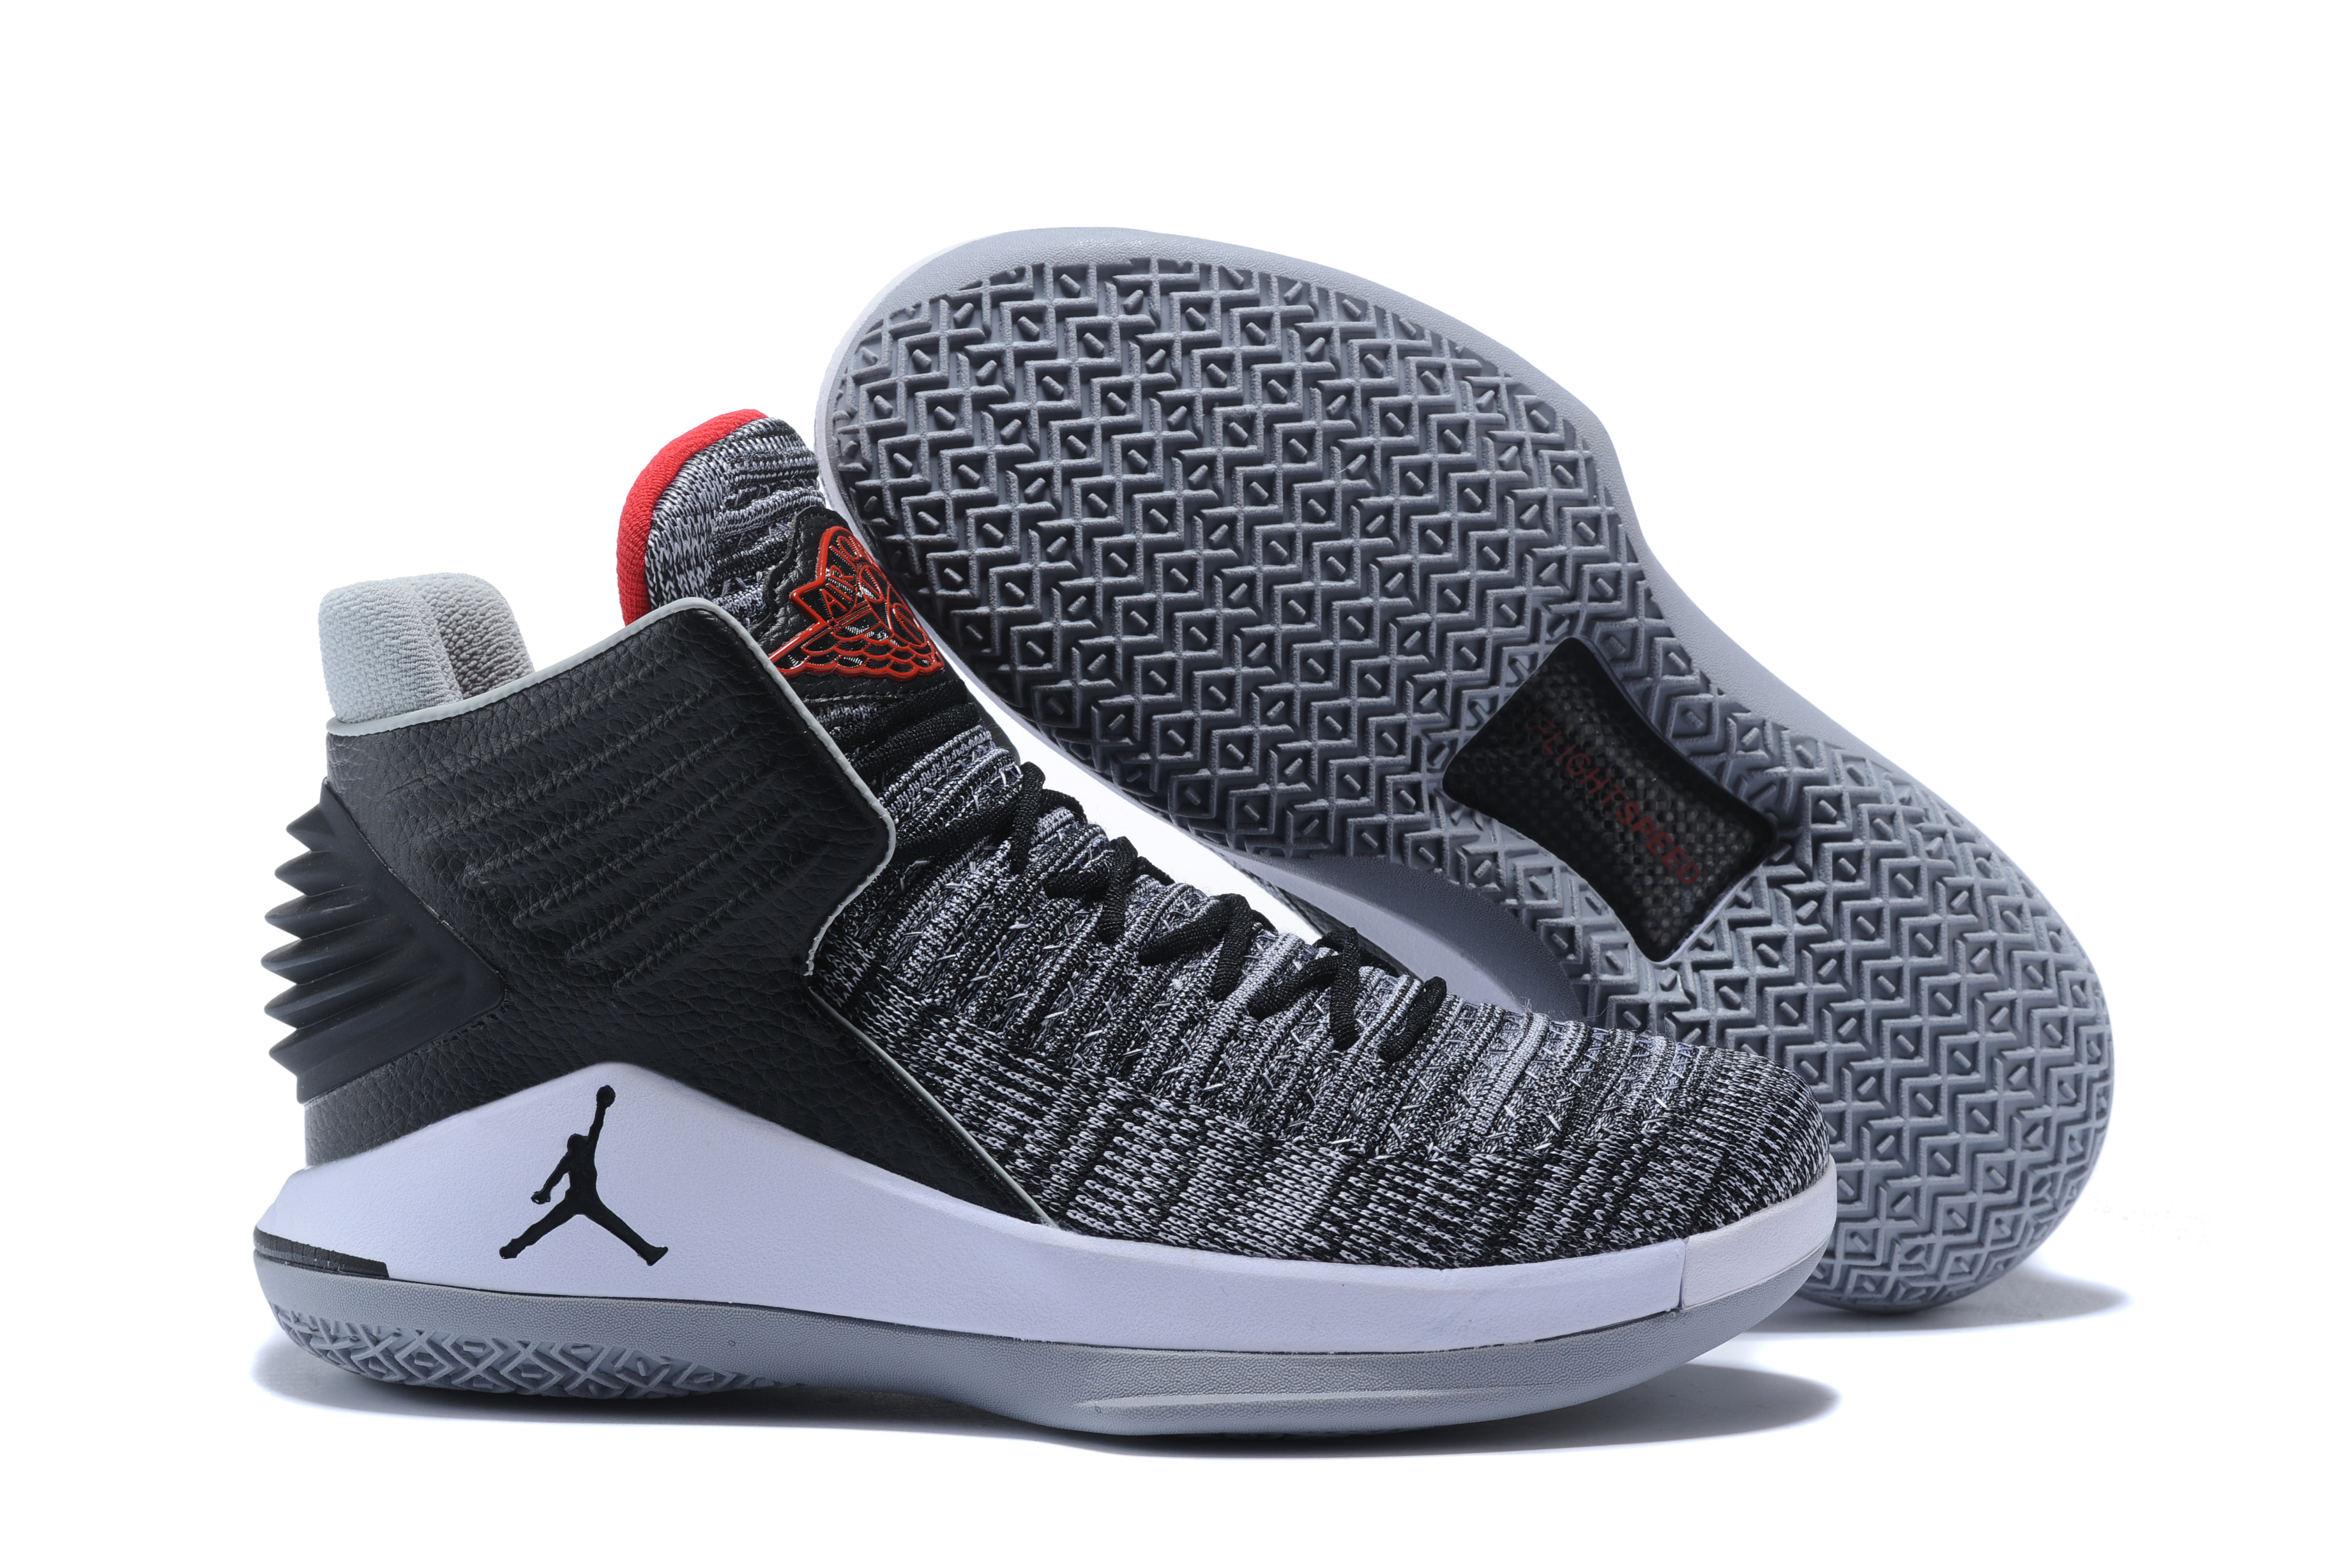 Original Air Jordan 32 Black Cement Shoes